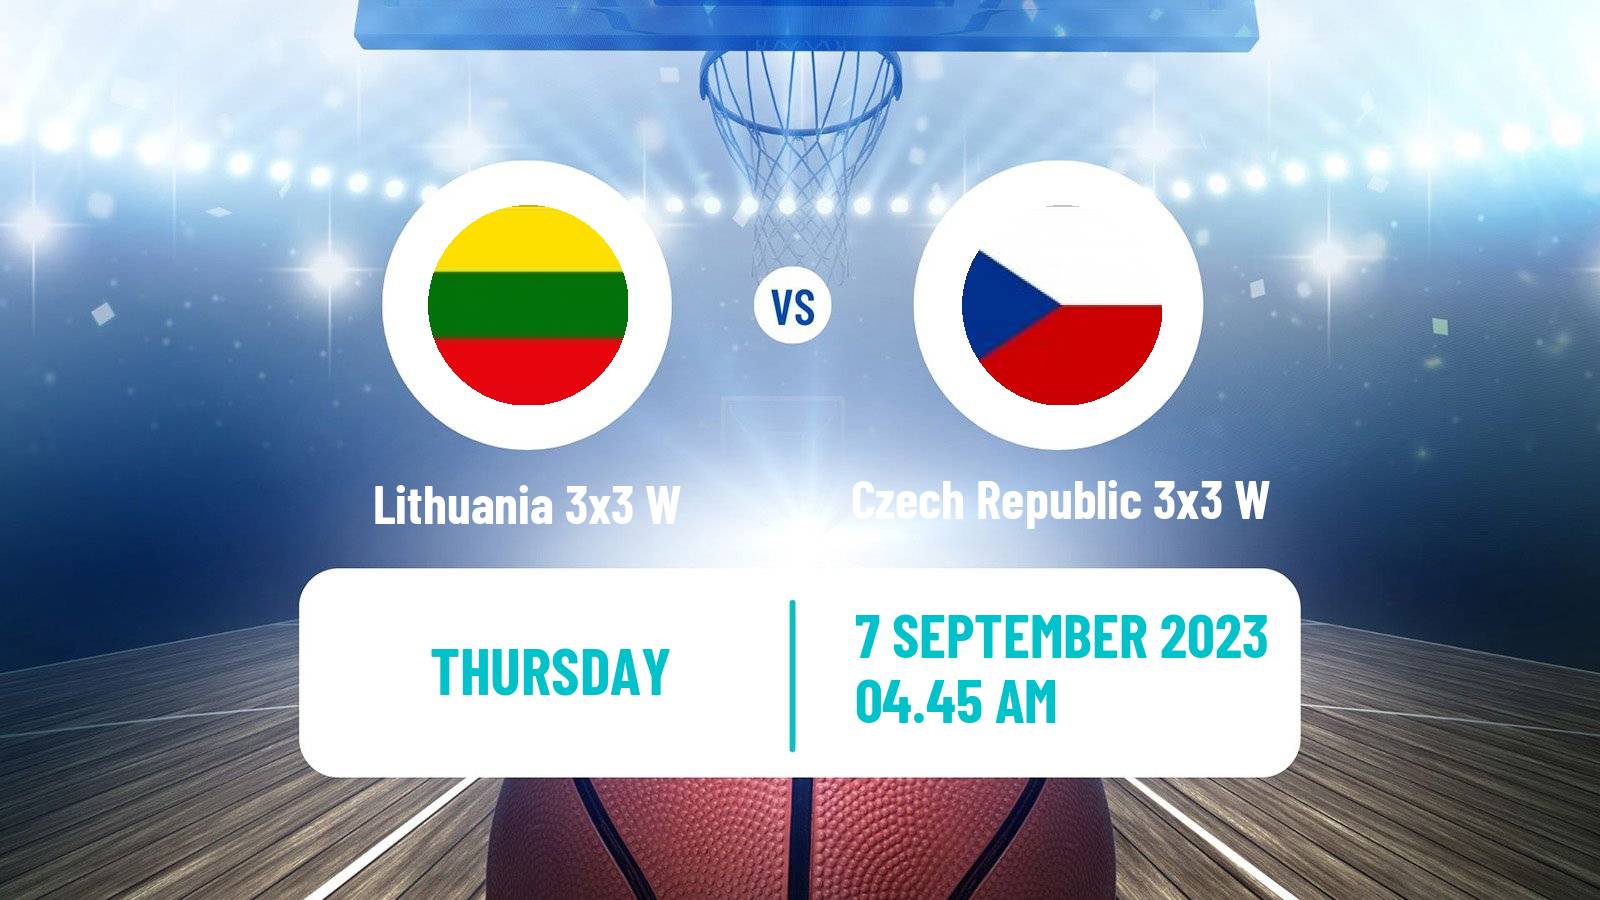 Basketball Europe Cup Basketball 3x3 Women Lithuania 3x3 W - Czech Republic 3x3 W